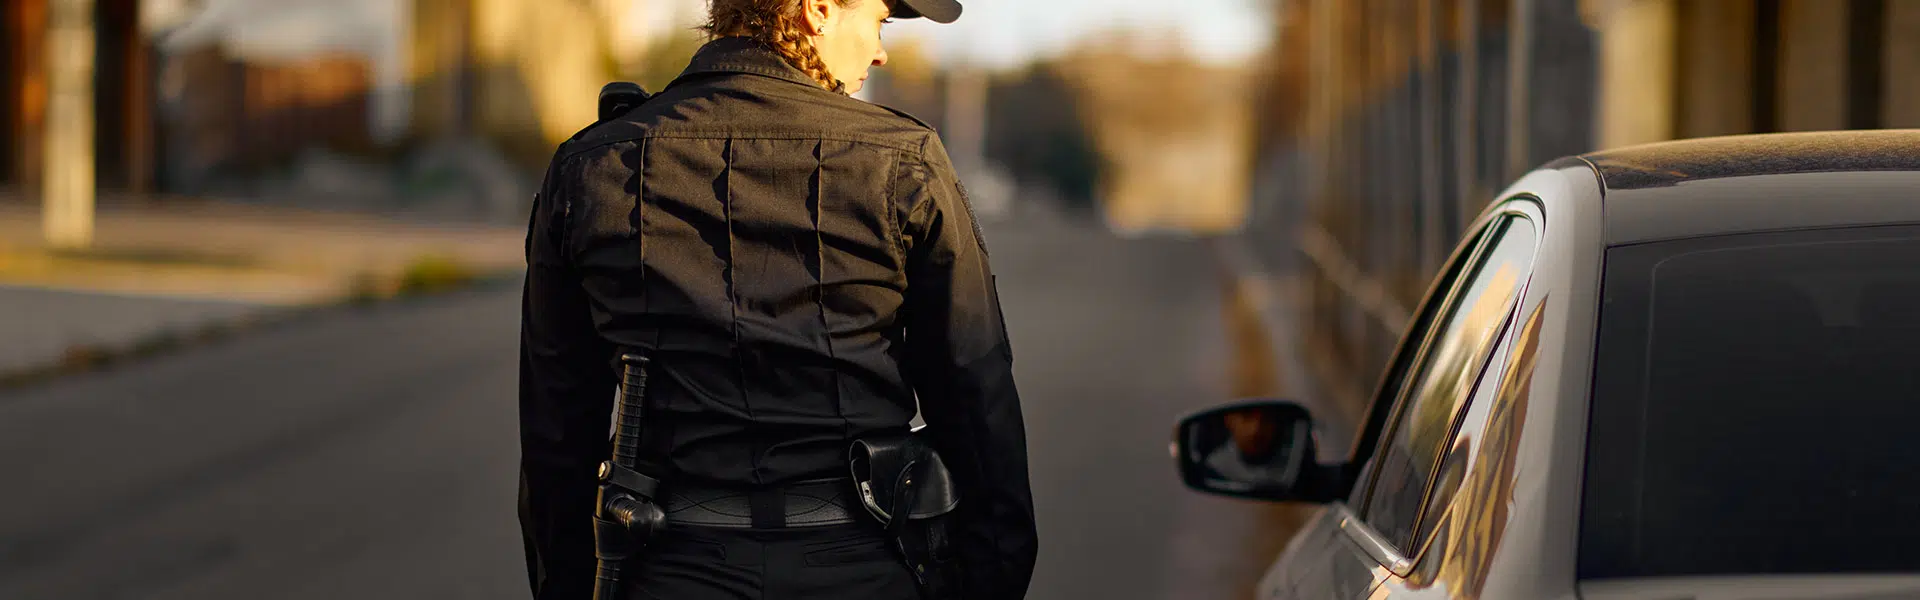 mujer-policía-nacional